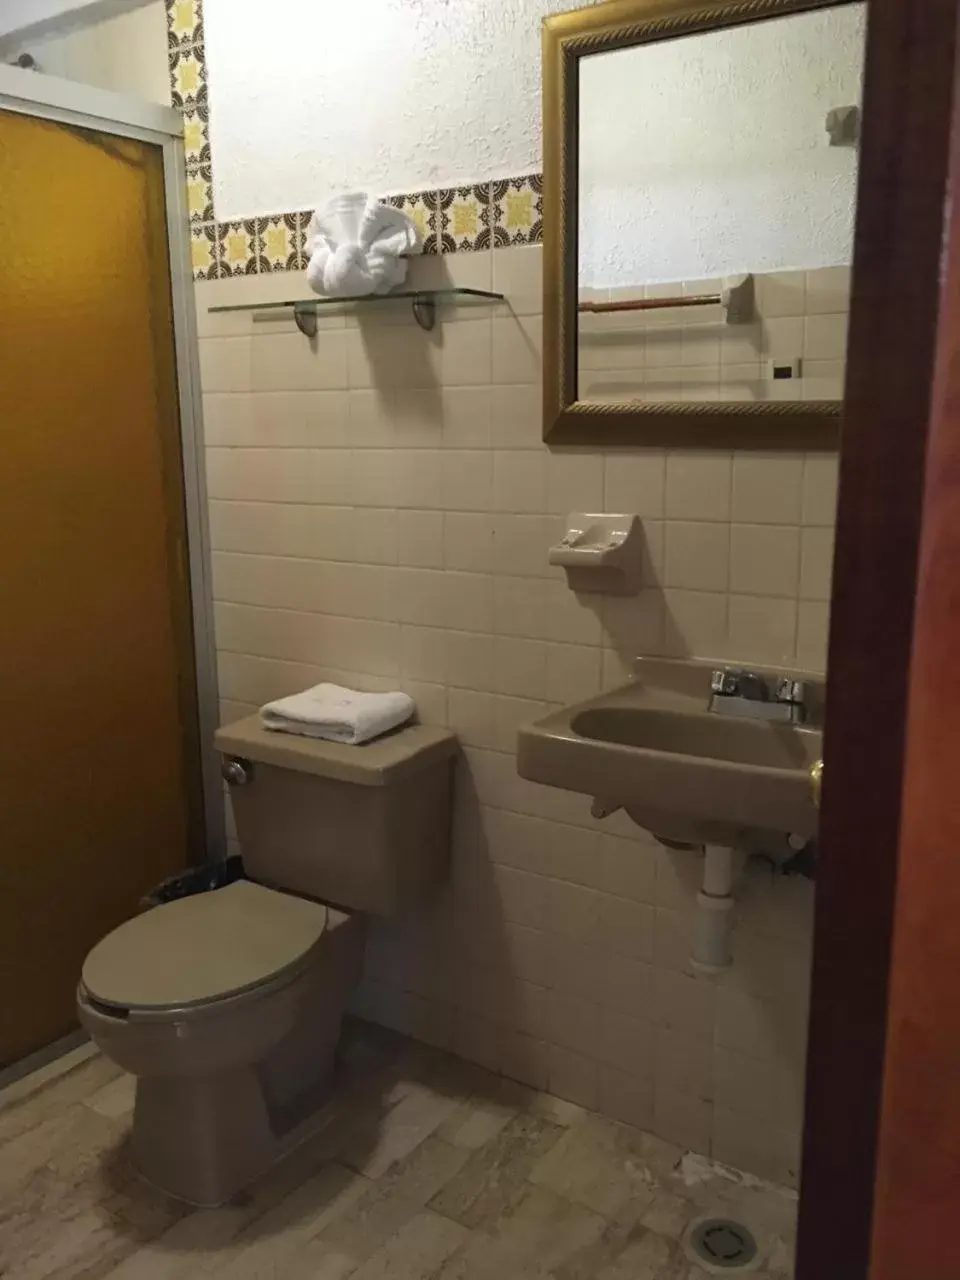 Bathroom in Arcos hotel